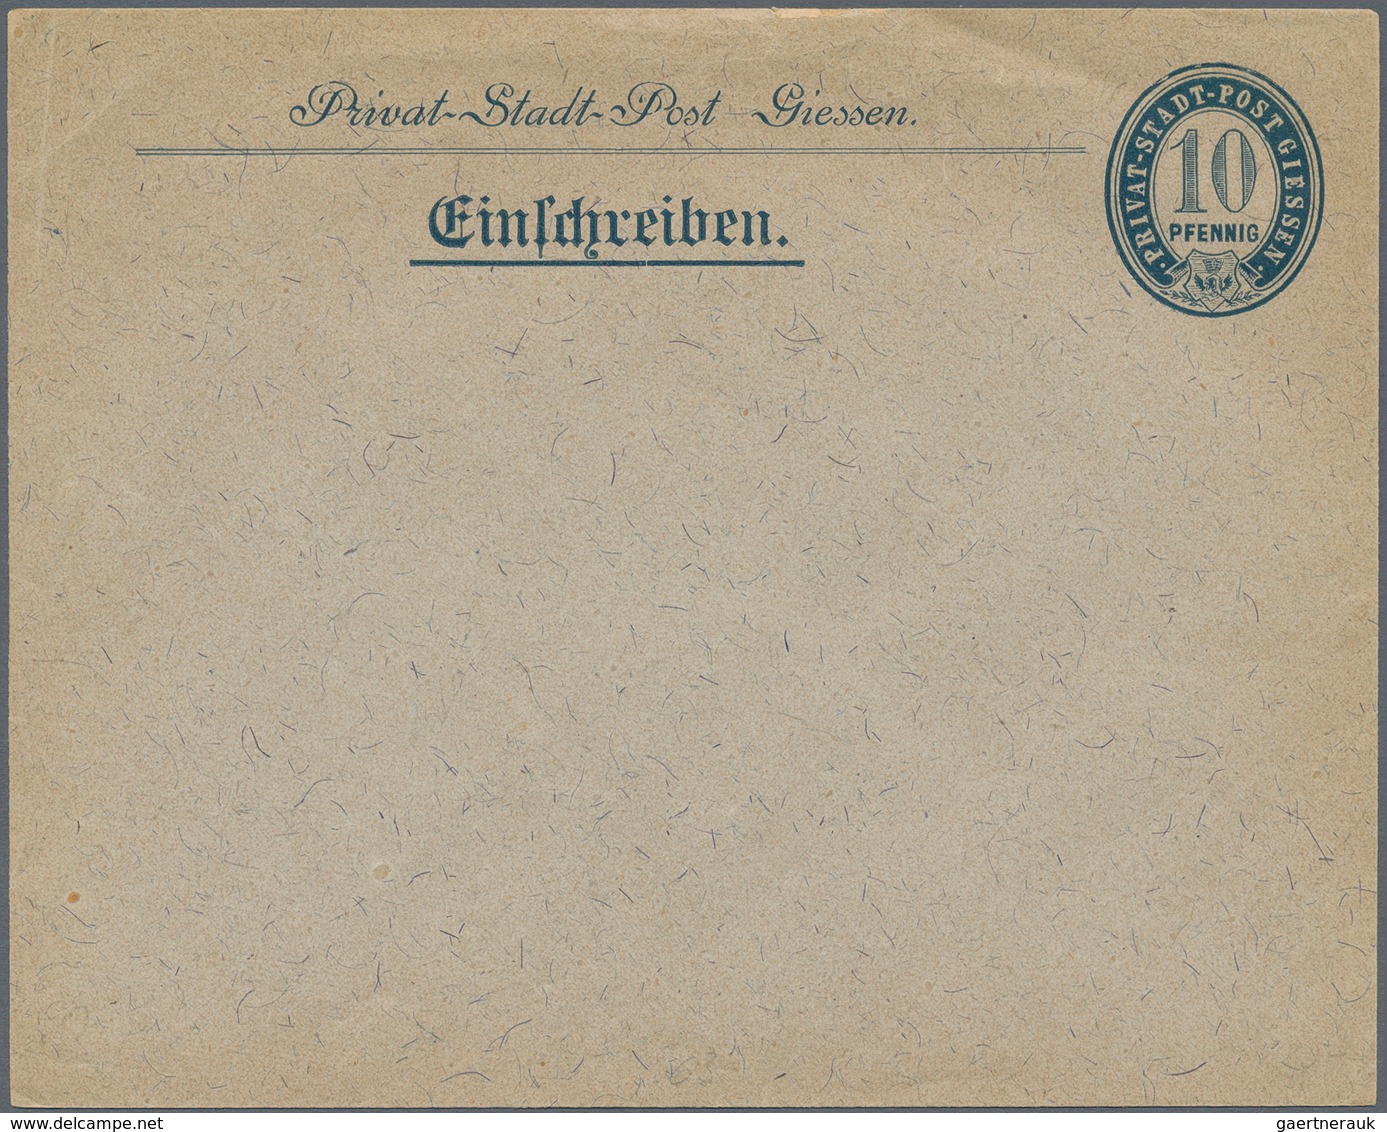 Deutsches Reich - Privatpost (Stadtpost): 1890er, vielseitige Partie von über 300 meist ungebrauchte